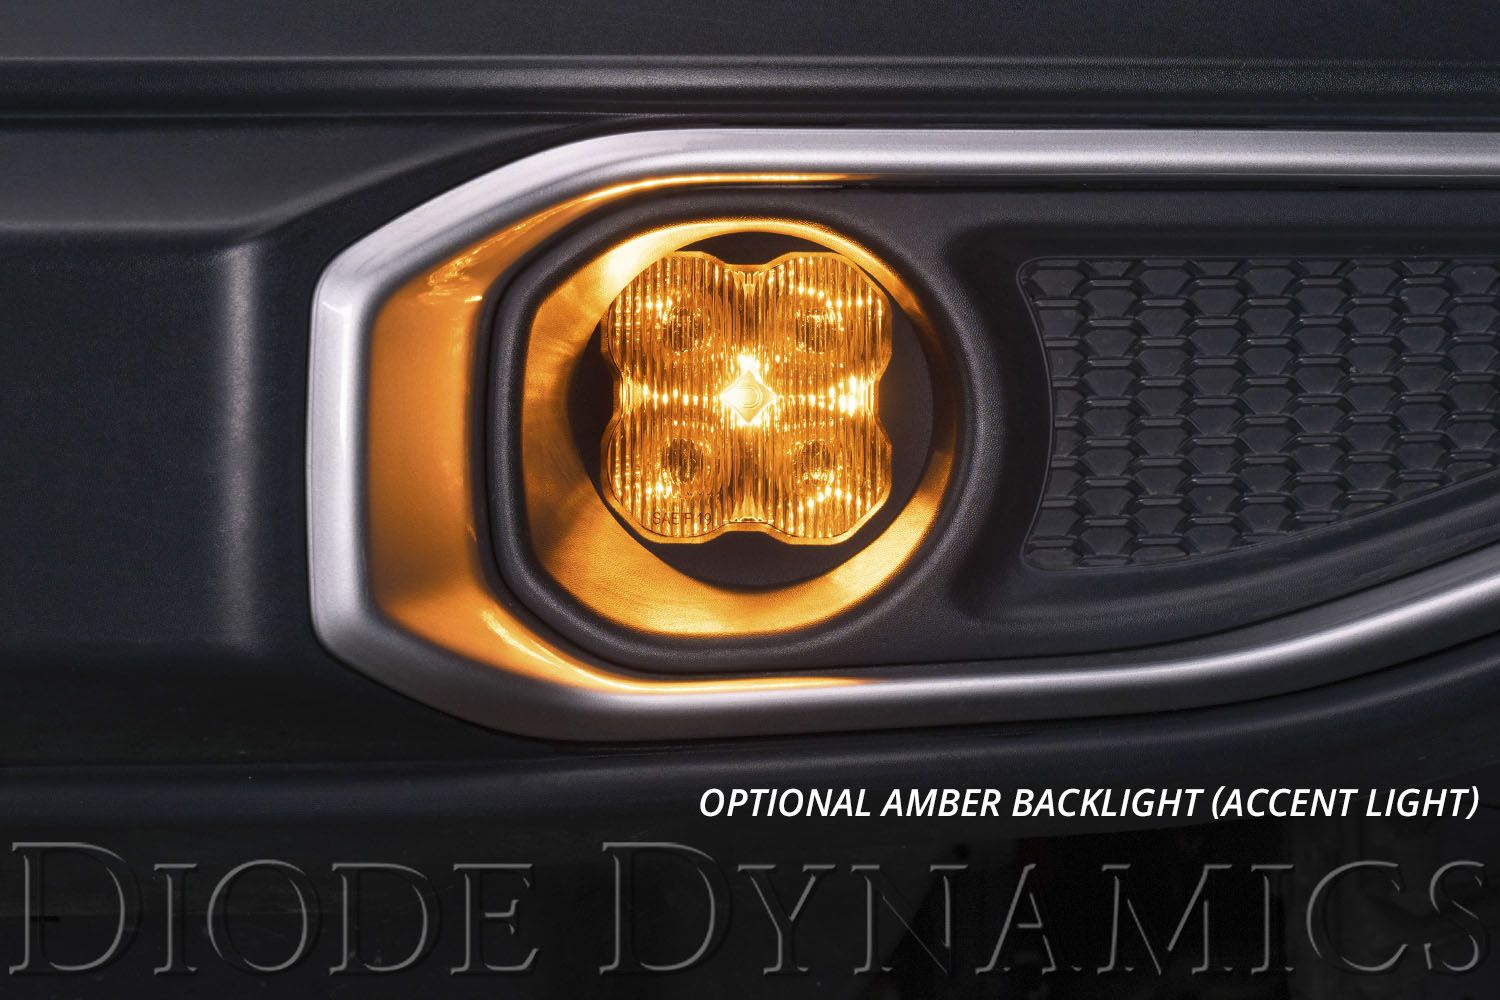 SS3 LED Fog Light Kit for 2019-2020 Honda Odyssey Diode Dynamics-